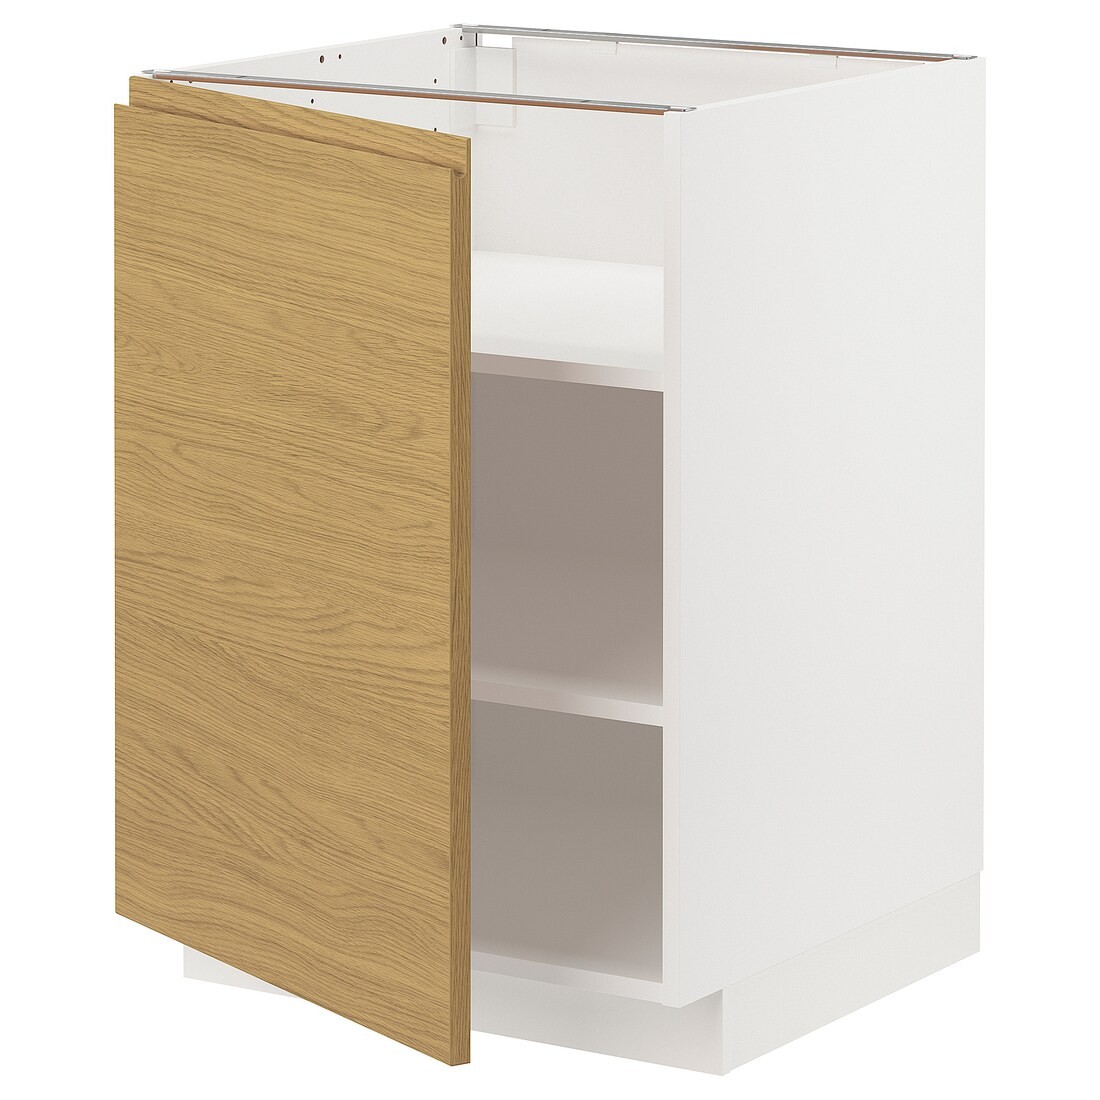 IKEA METOD підлогова шафа з полицями, білий / Voxtorp імітація дуб, 60x60 см 79538470 795.384.70